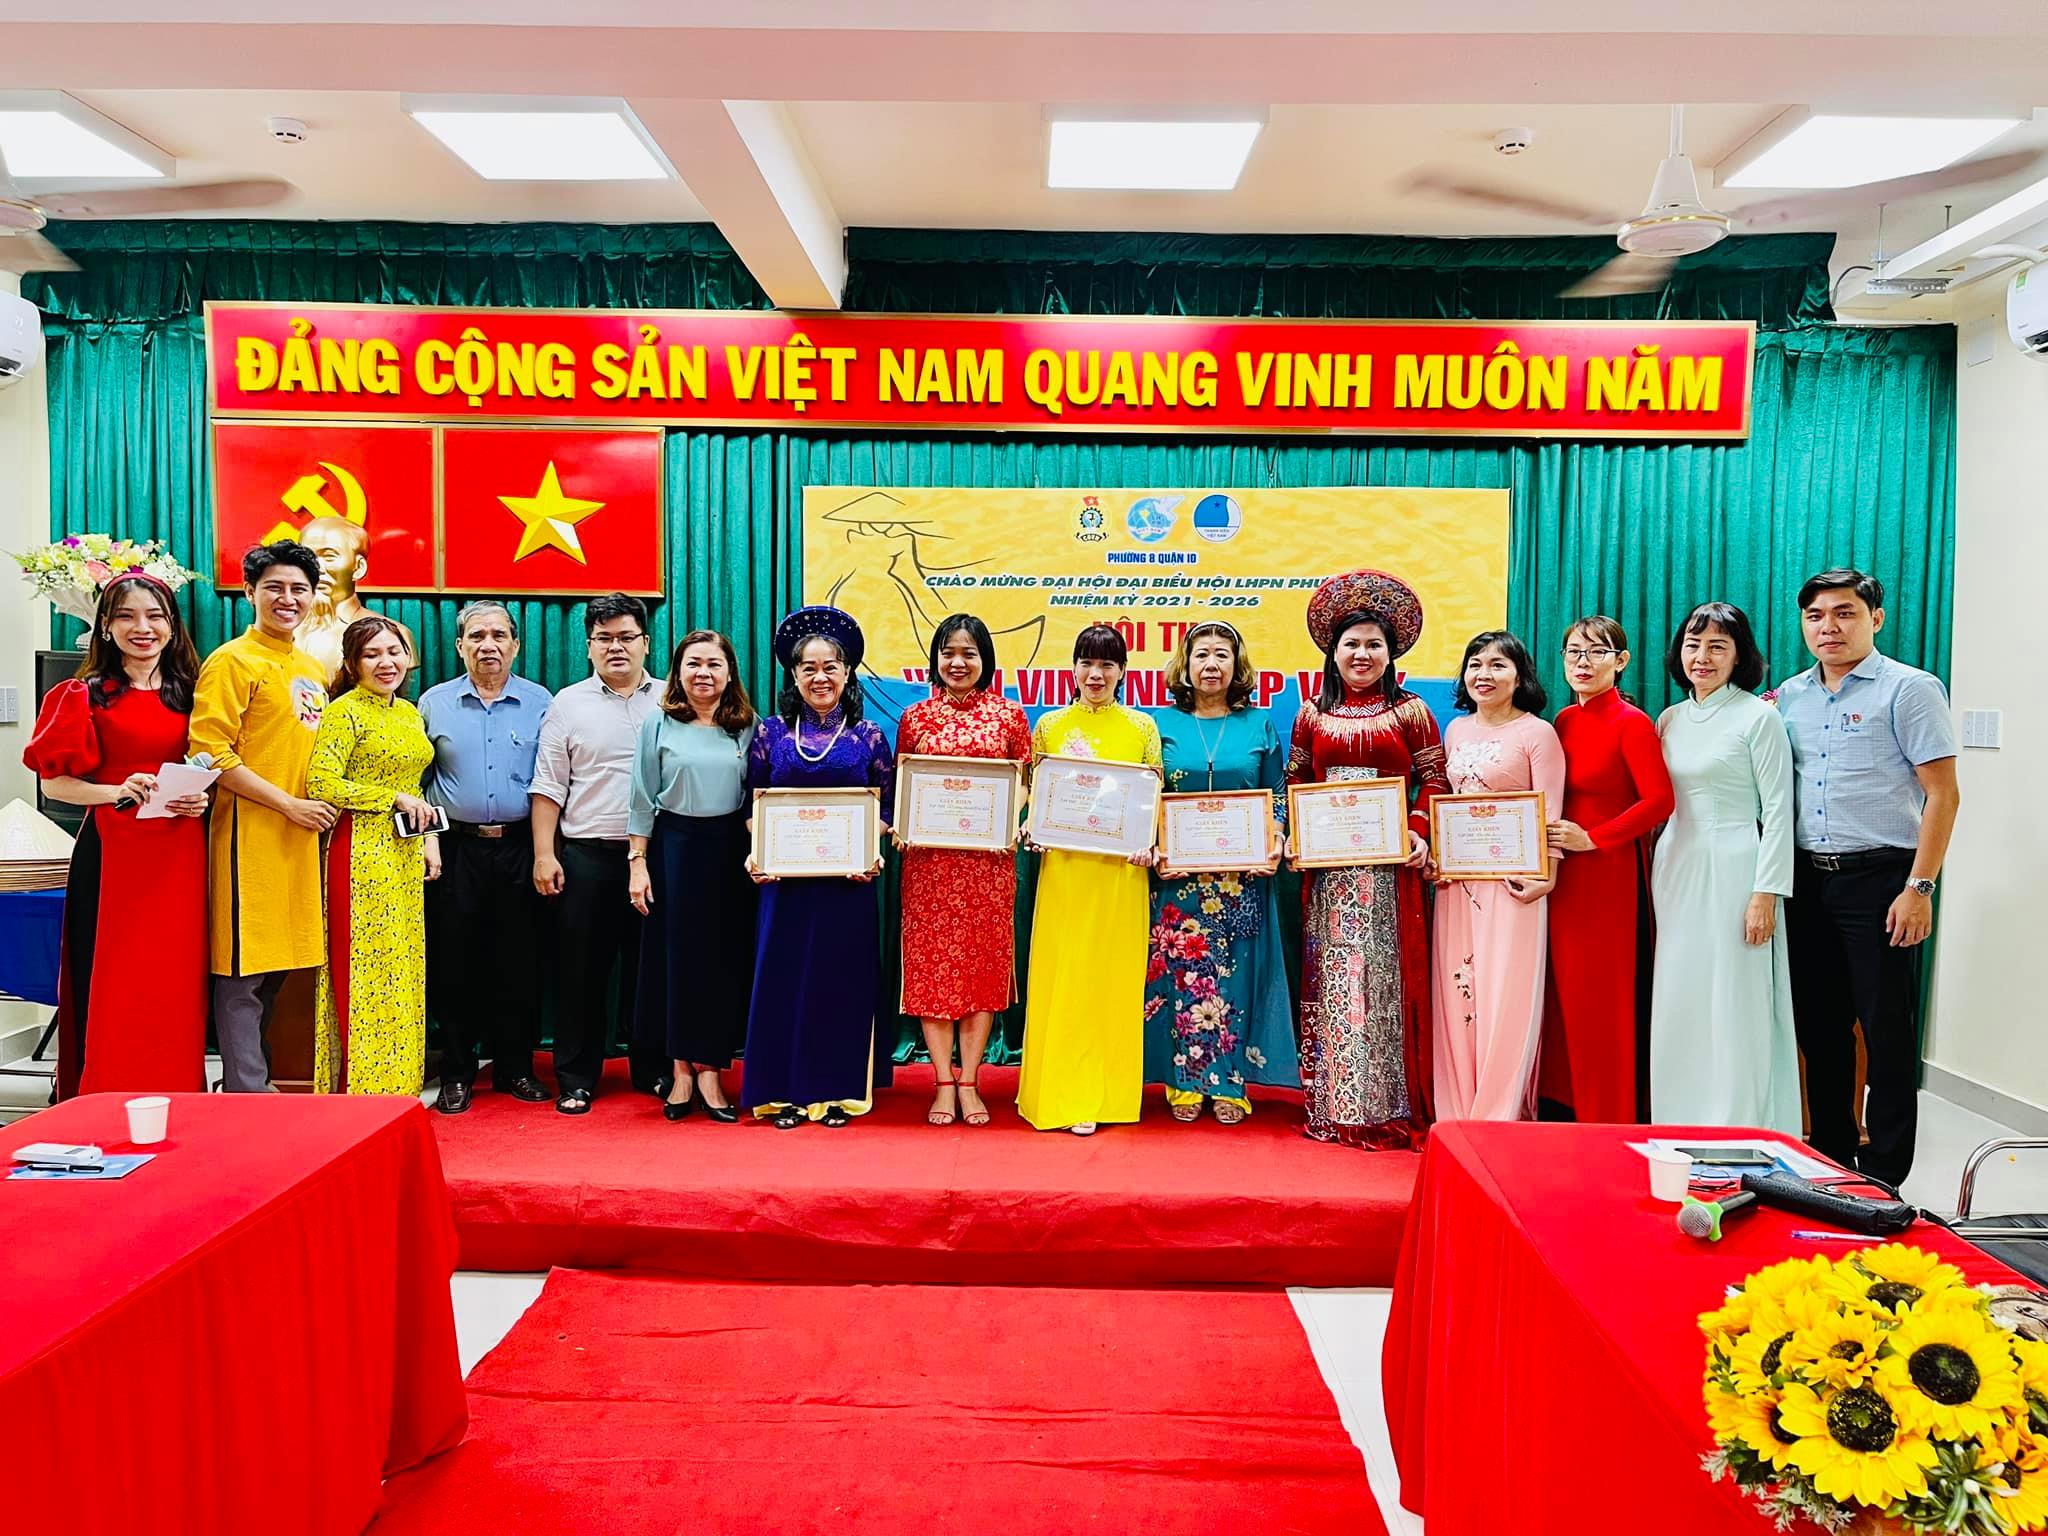 Image: Phường 8 tổ chức hội thi "Tôn vinh nét đẹp Việt" năm 2021